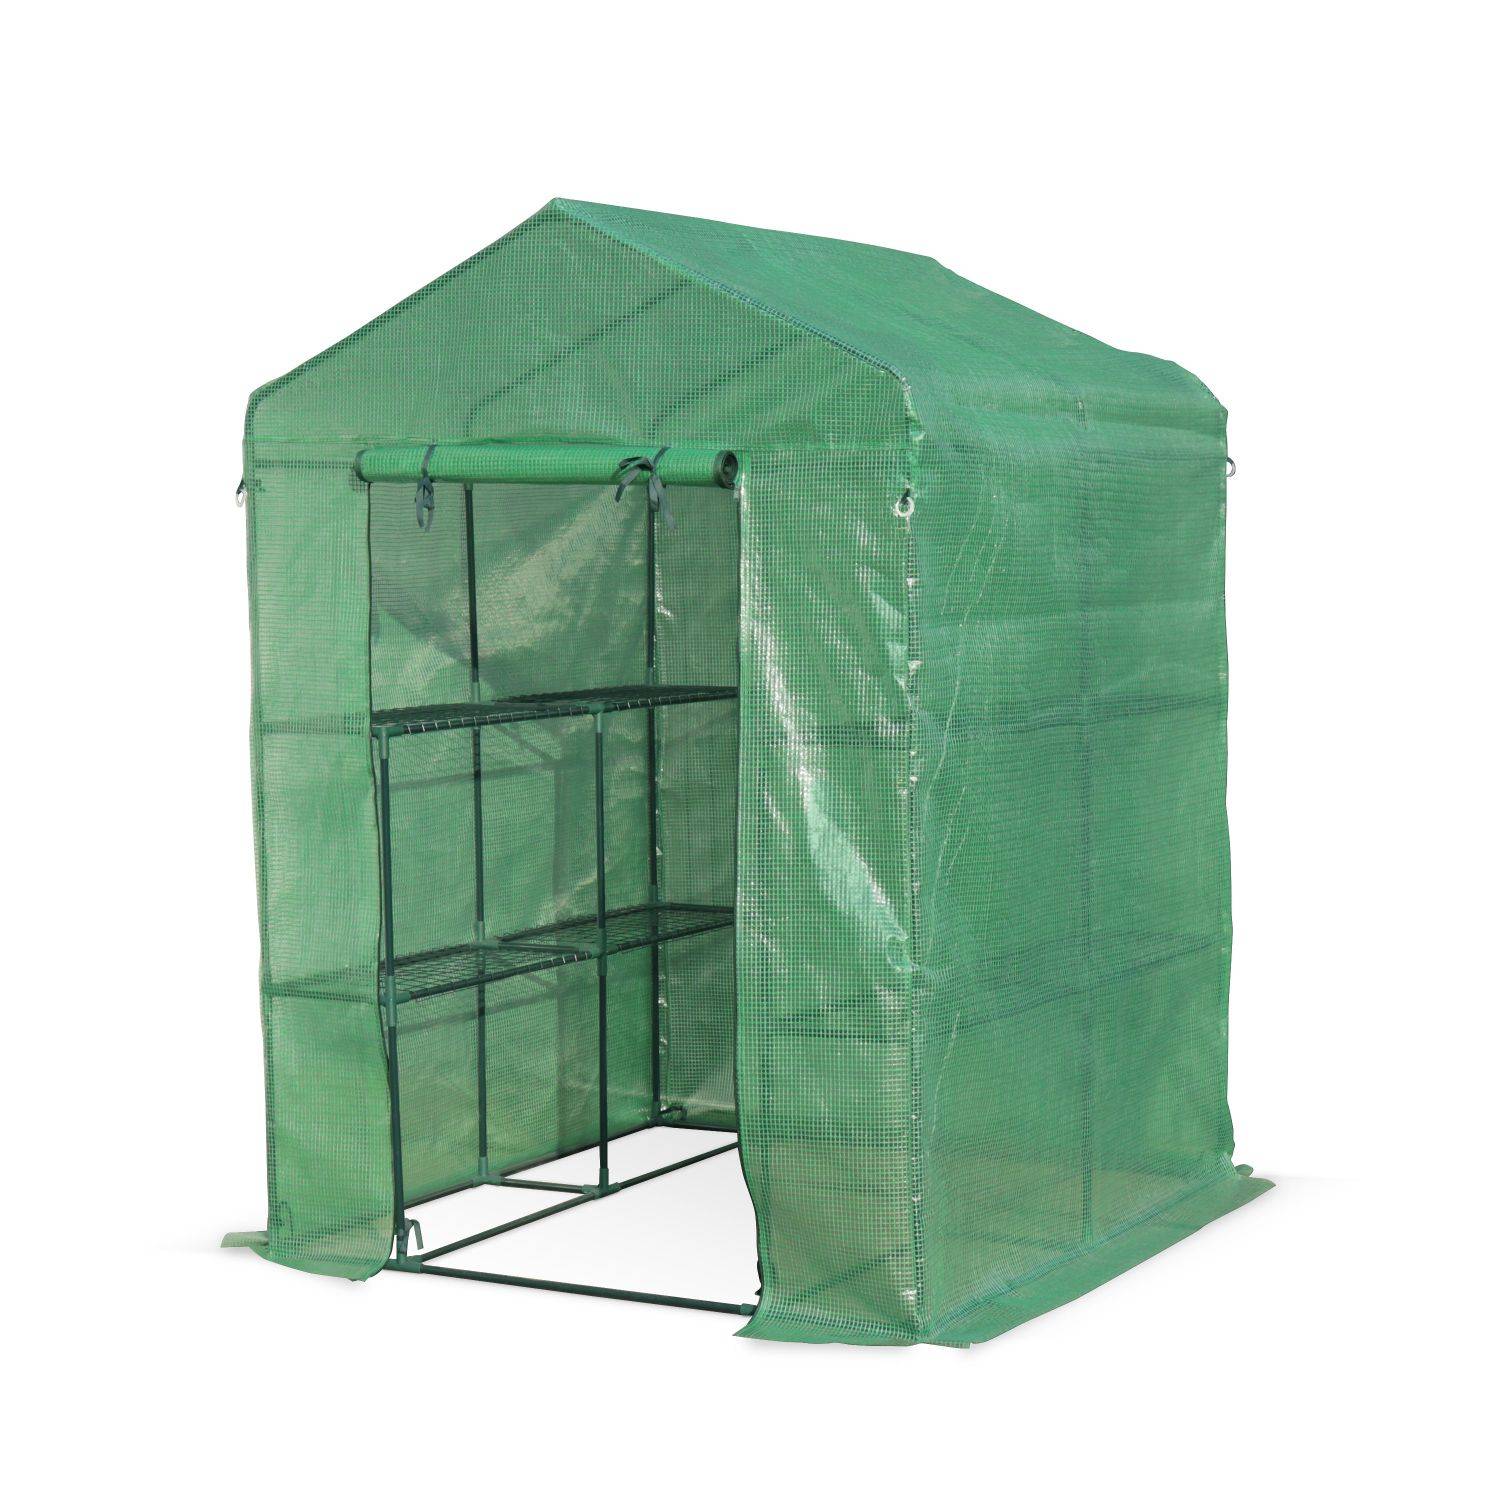 Gartengewächshaus BASILIC 2m² mit 8 Regalen, Material Polyethylen Photo1